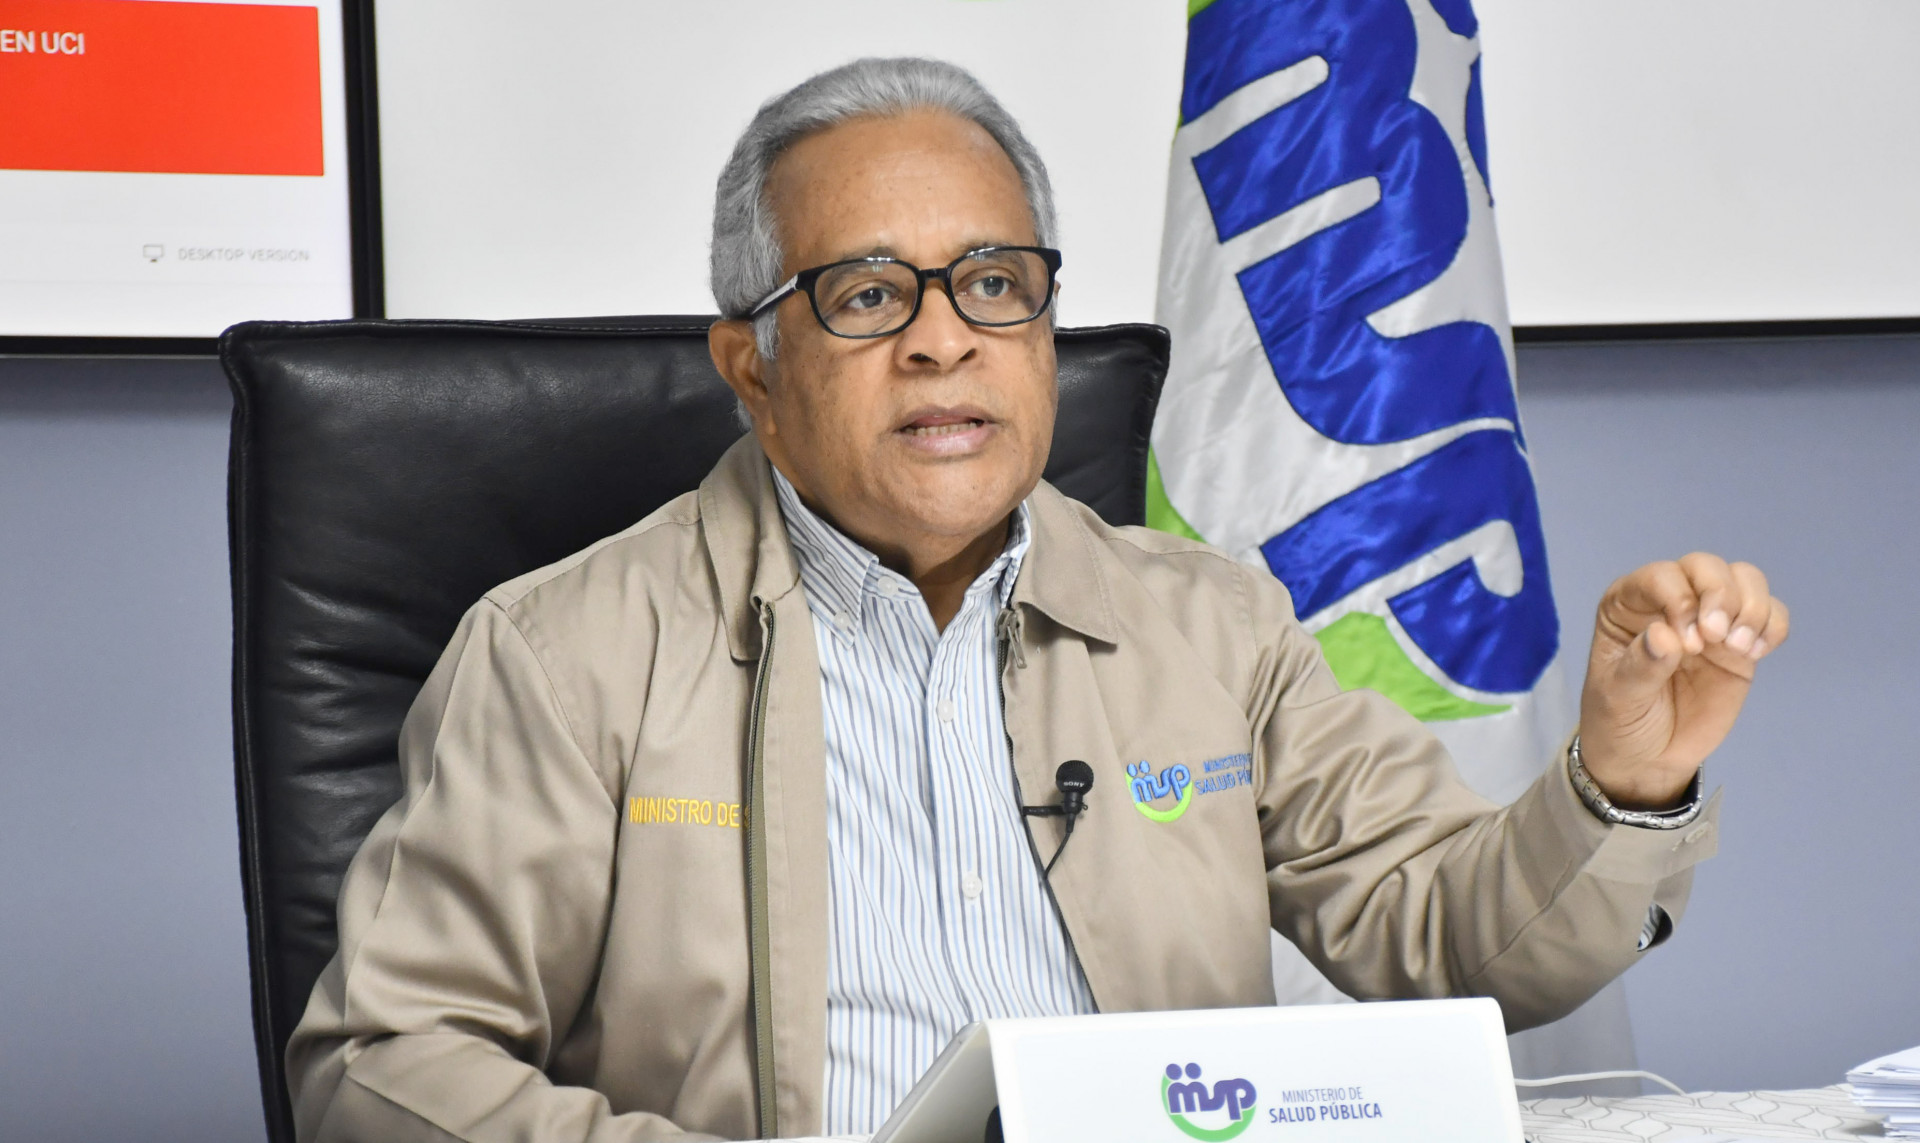 REPÚBLICA DOMINICANA: Ministro de Salud anuncia sanciones con multas de uno a diez salarios mínimos por no usar mascarillas en espacios públicos